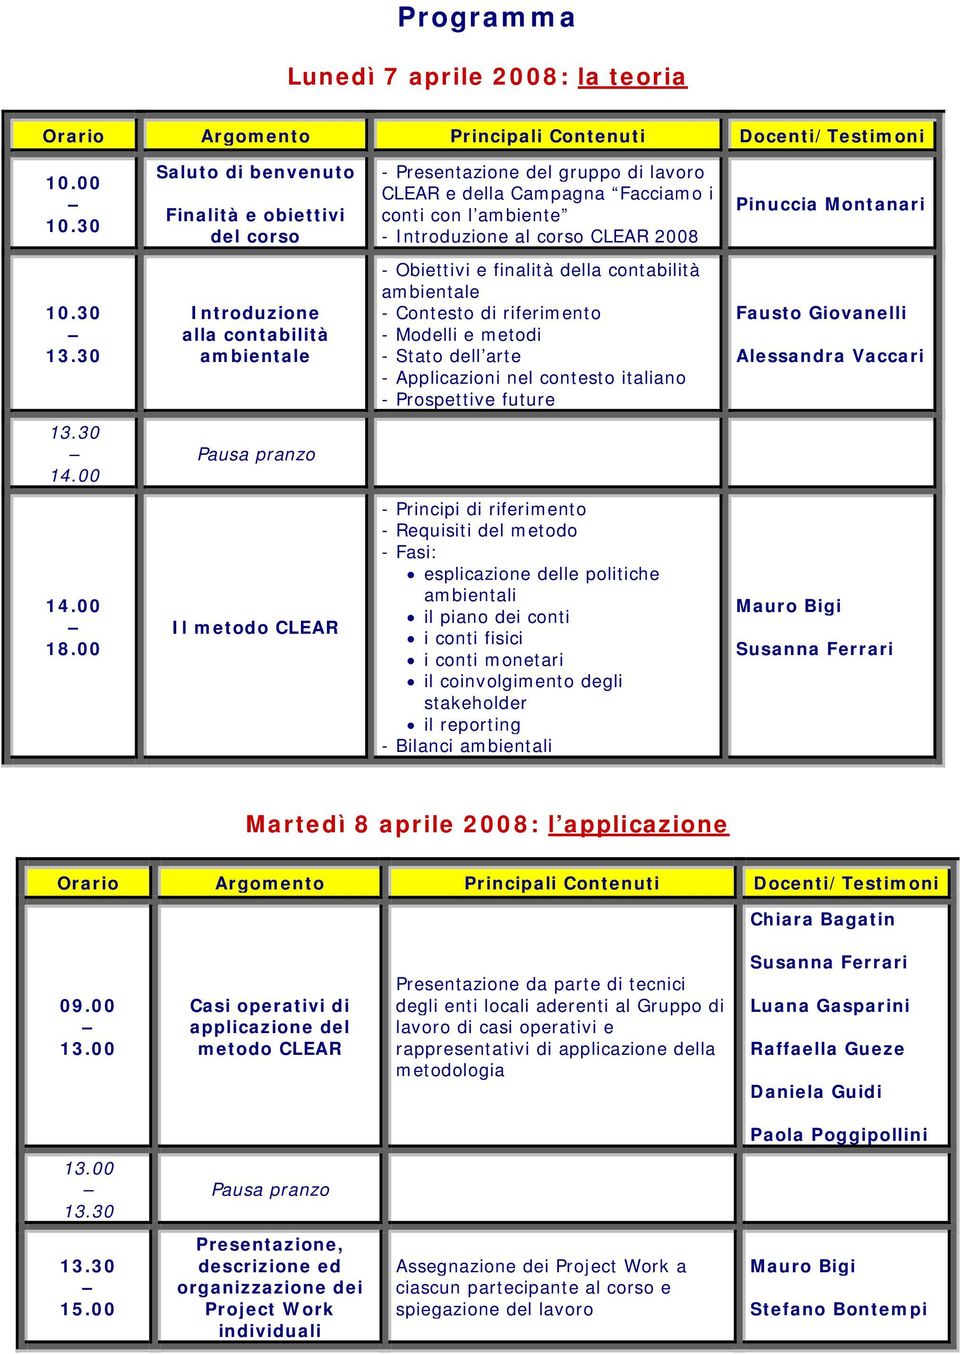 10.30 Introduzione alla contabilità ambientale - Obiettivi e finalità della contabilità ambientale - Contesto di riferimento - Modelli e metodi - Stato dell arte - Applicazioni nel contesto italiano